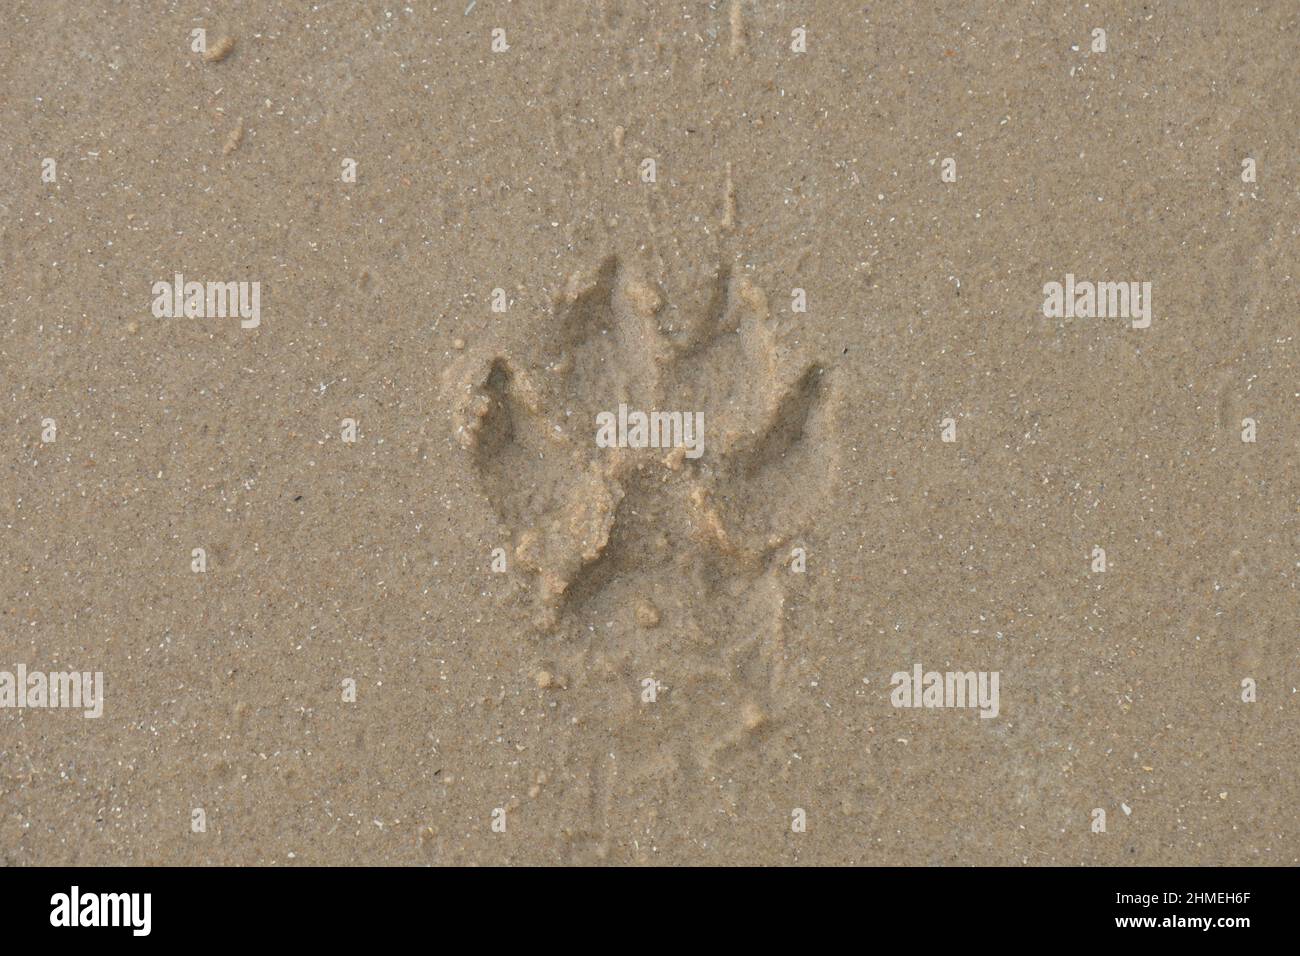 Una stampa della zampa di un cane sulla spiaggia di sabbia gialla. Vista da vicino. Foto Stock